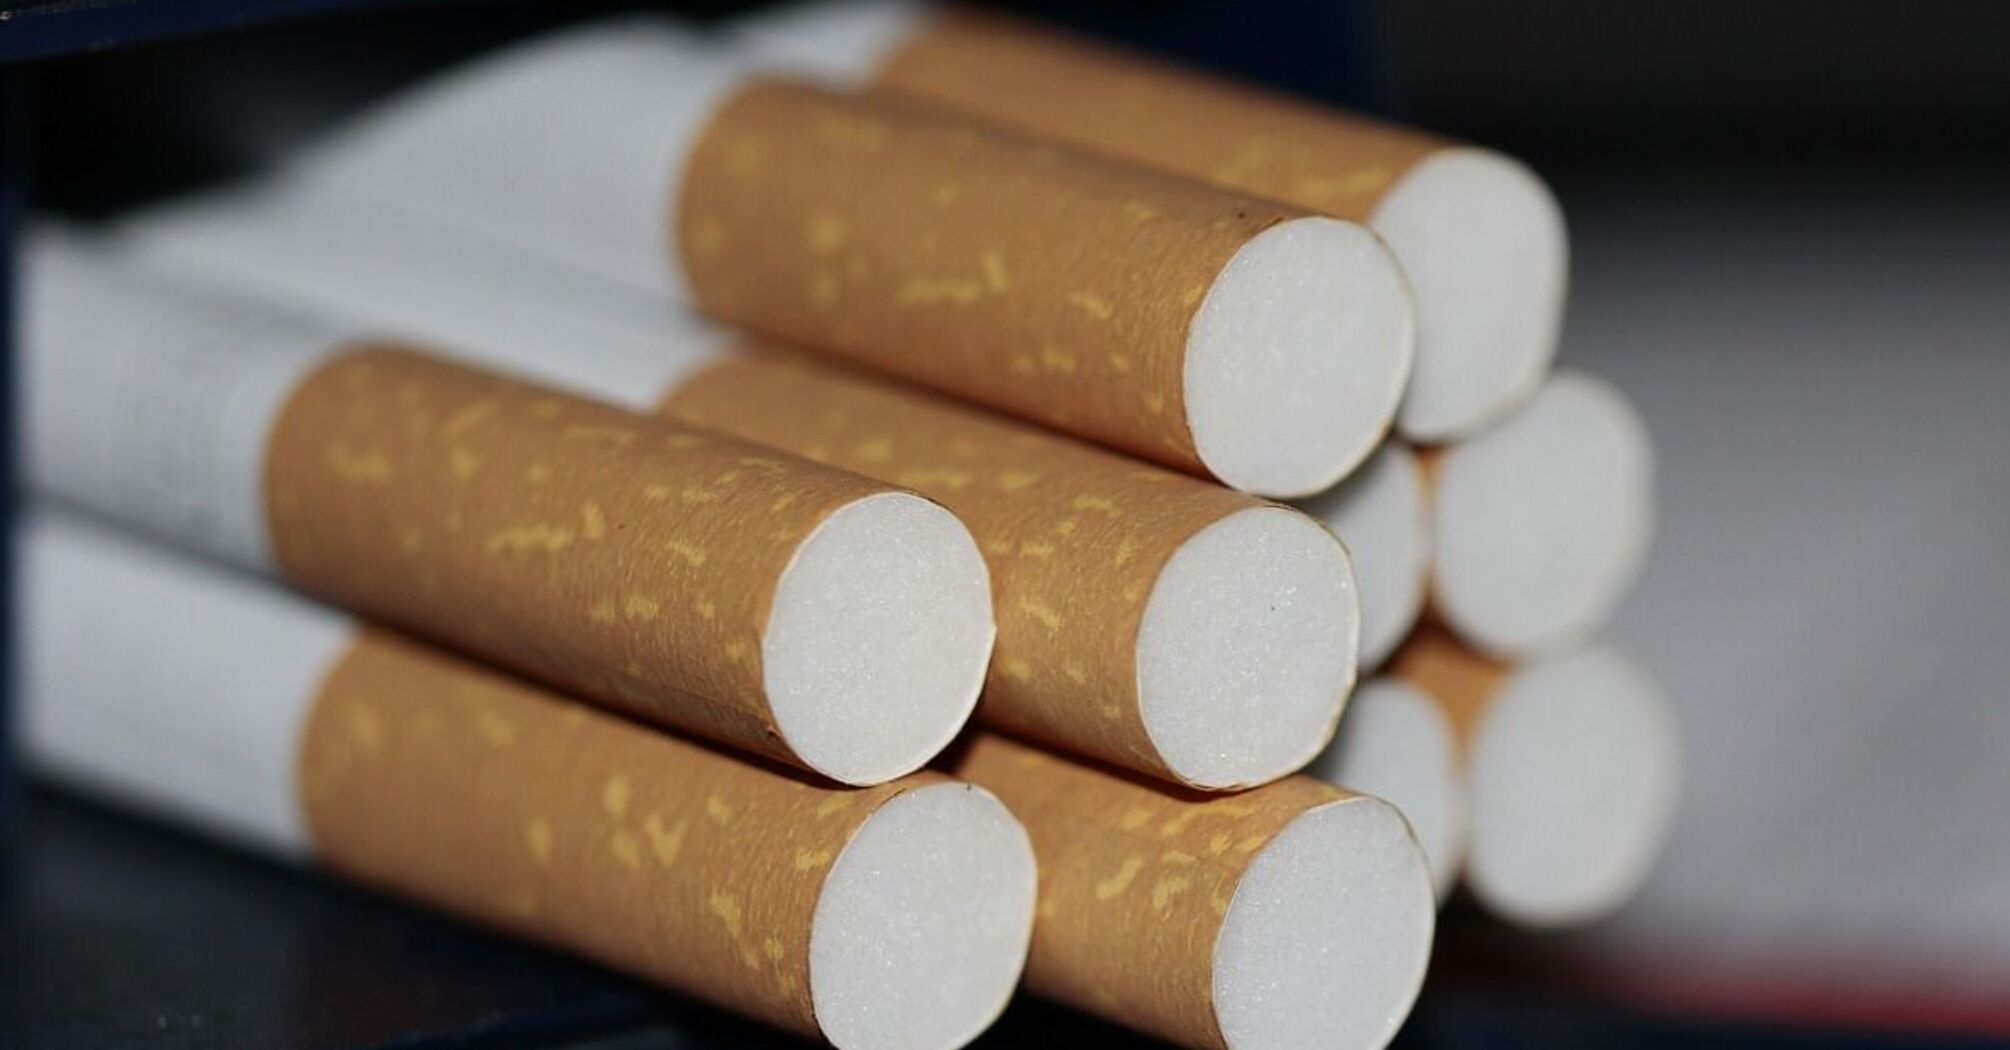 Курити стане дорожче: скільки коштуватимуть цигарки та стіки за новими правилами